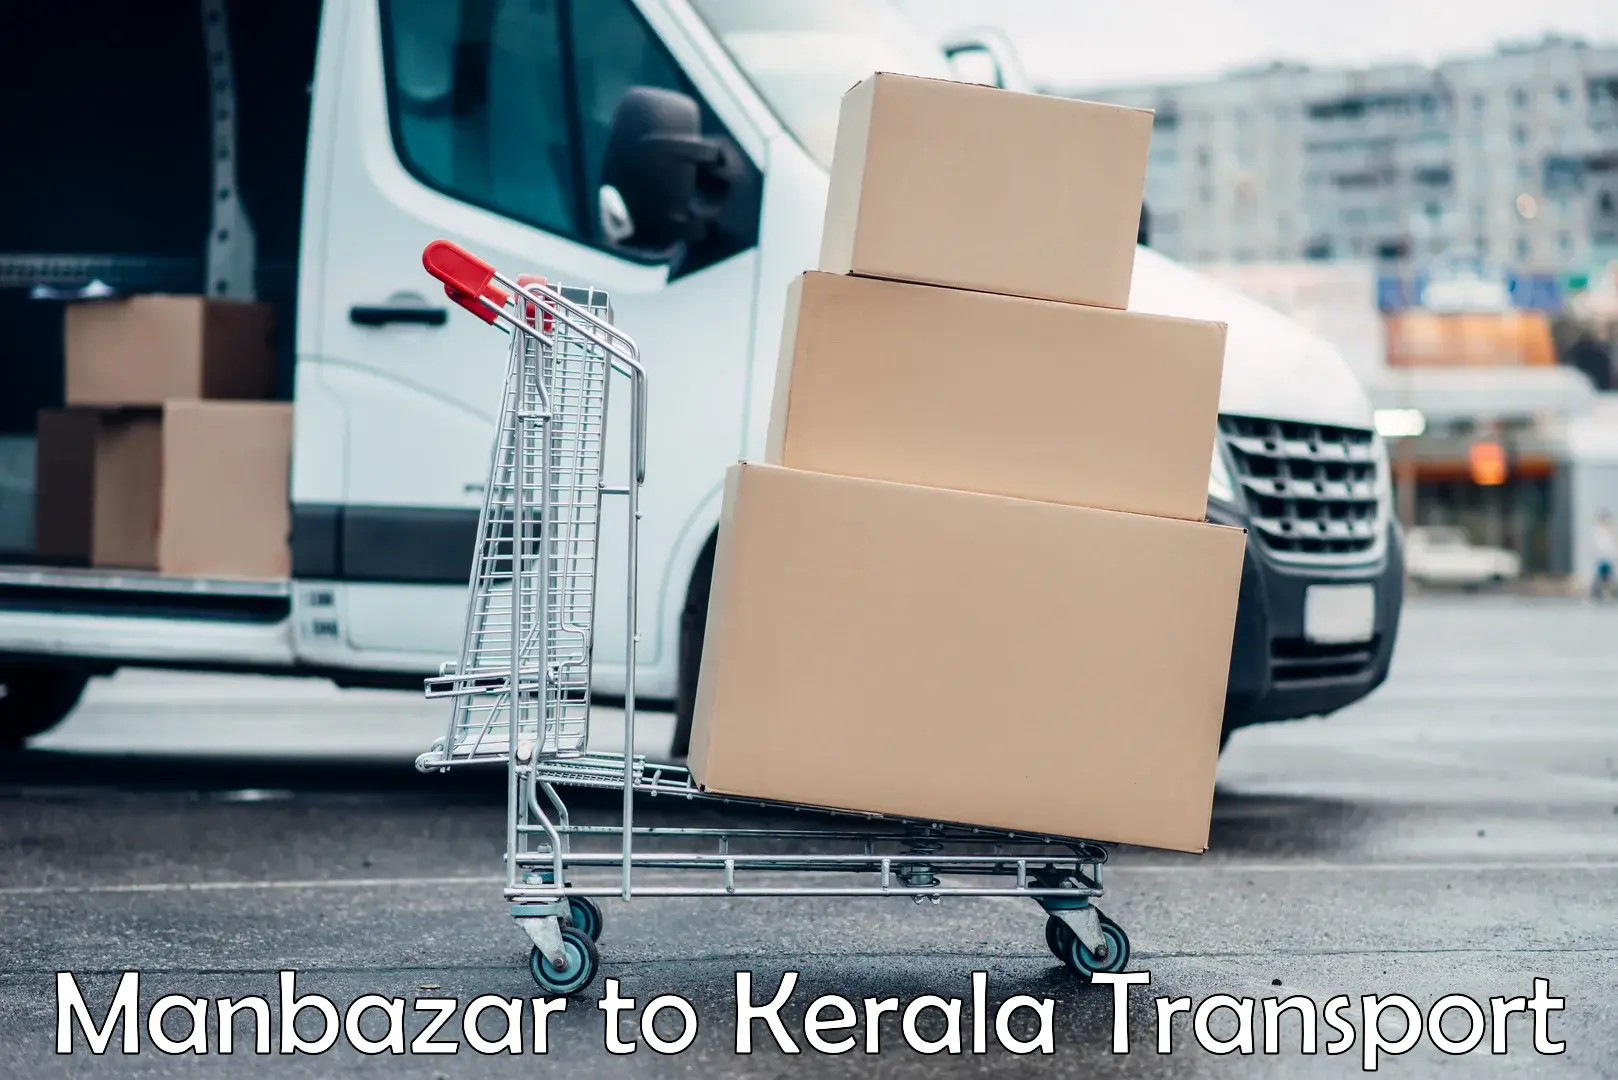 Online transport booking in Manbazar to Malappuram